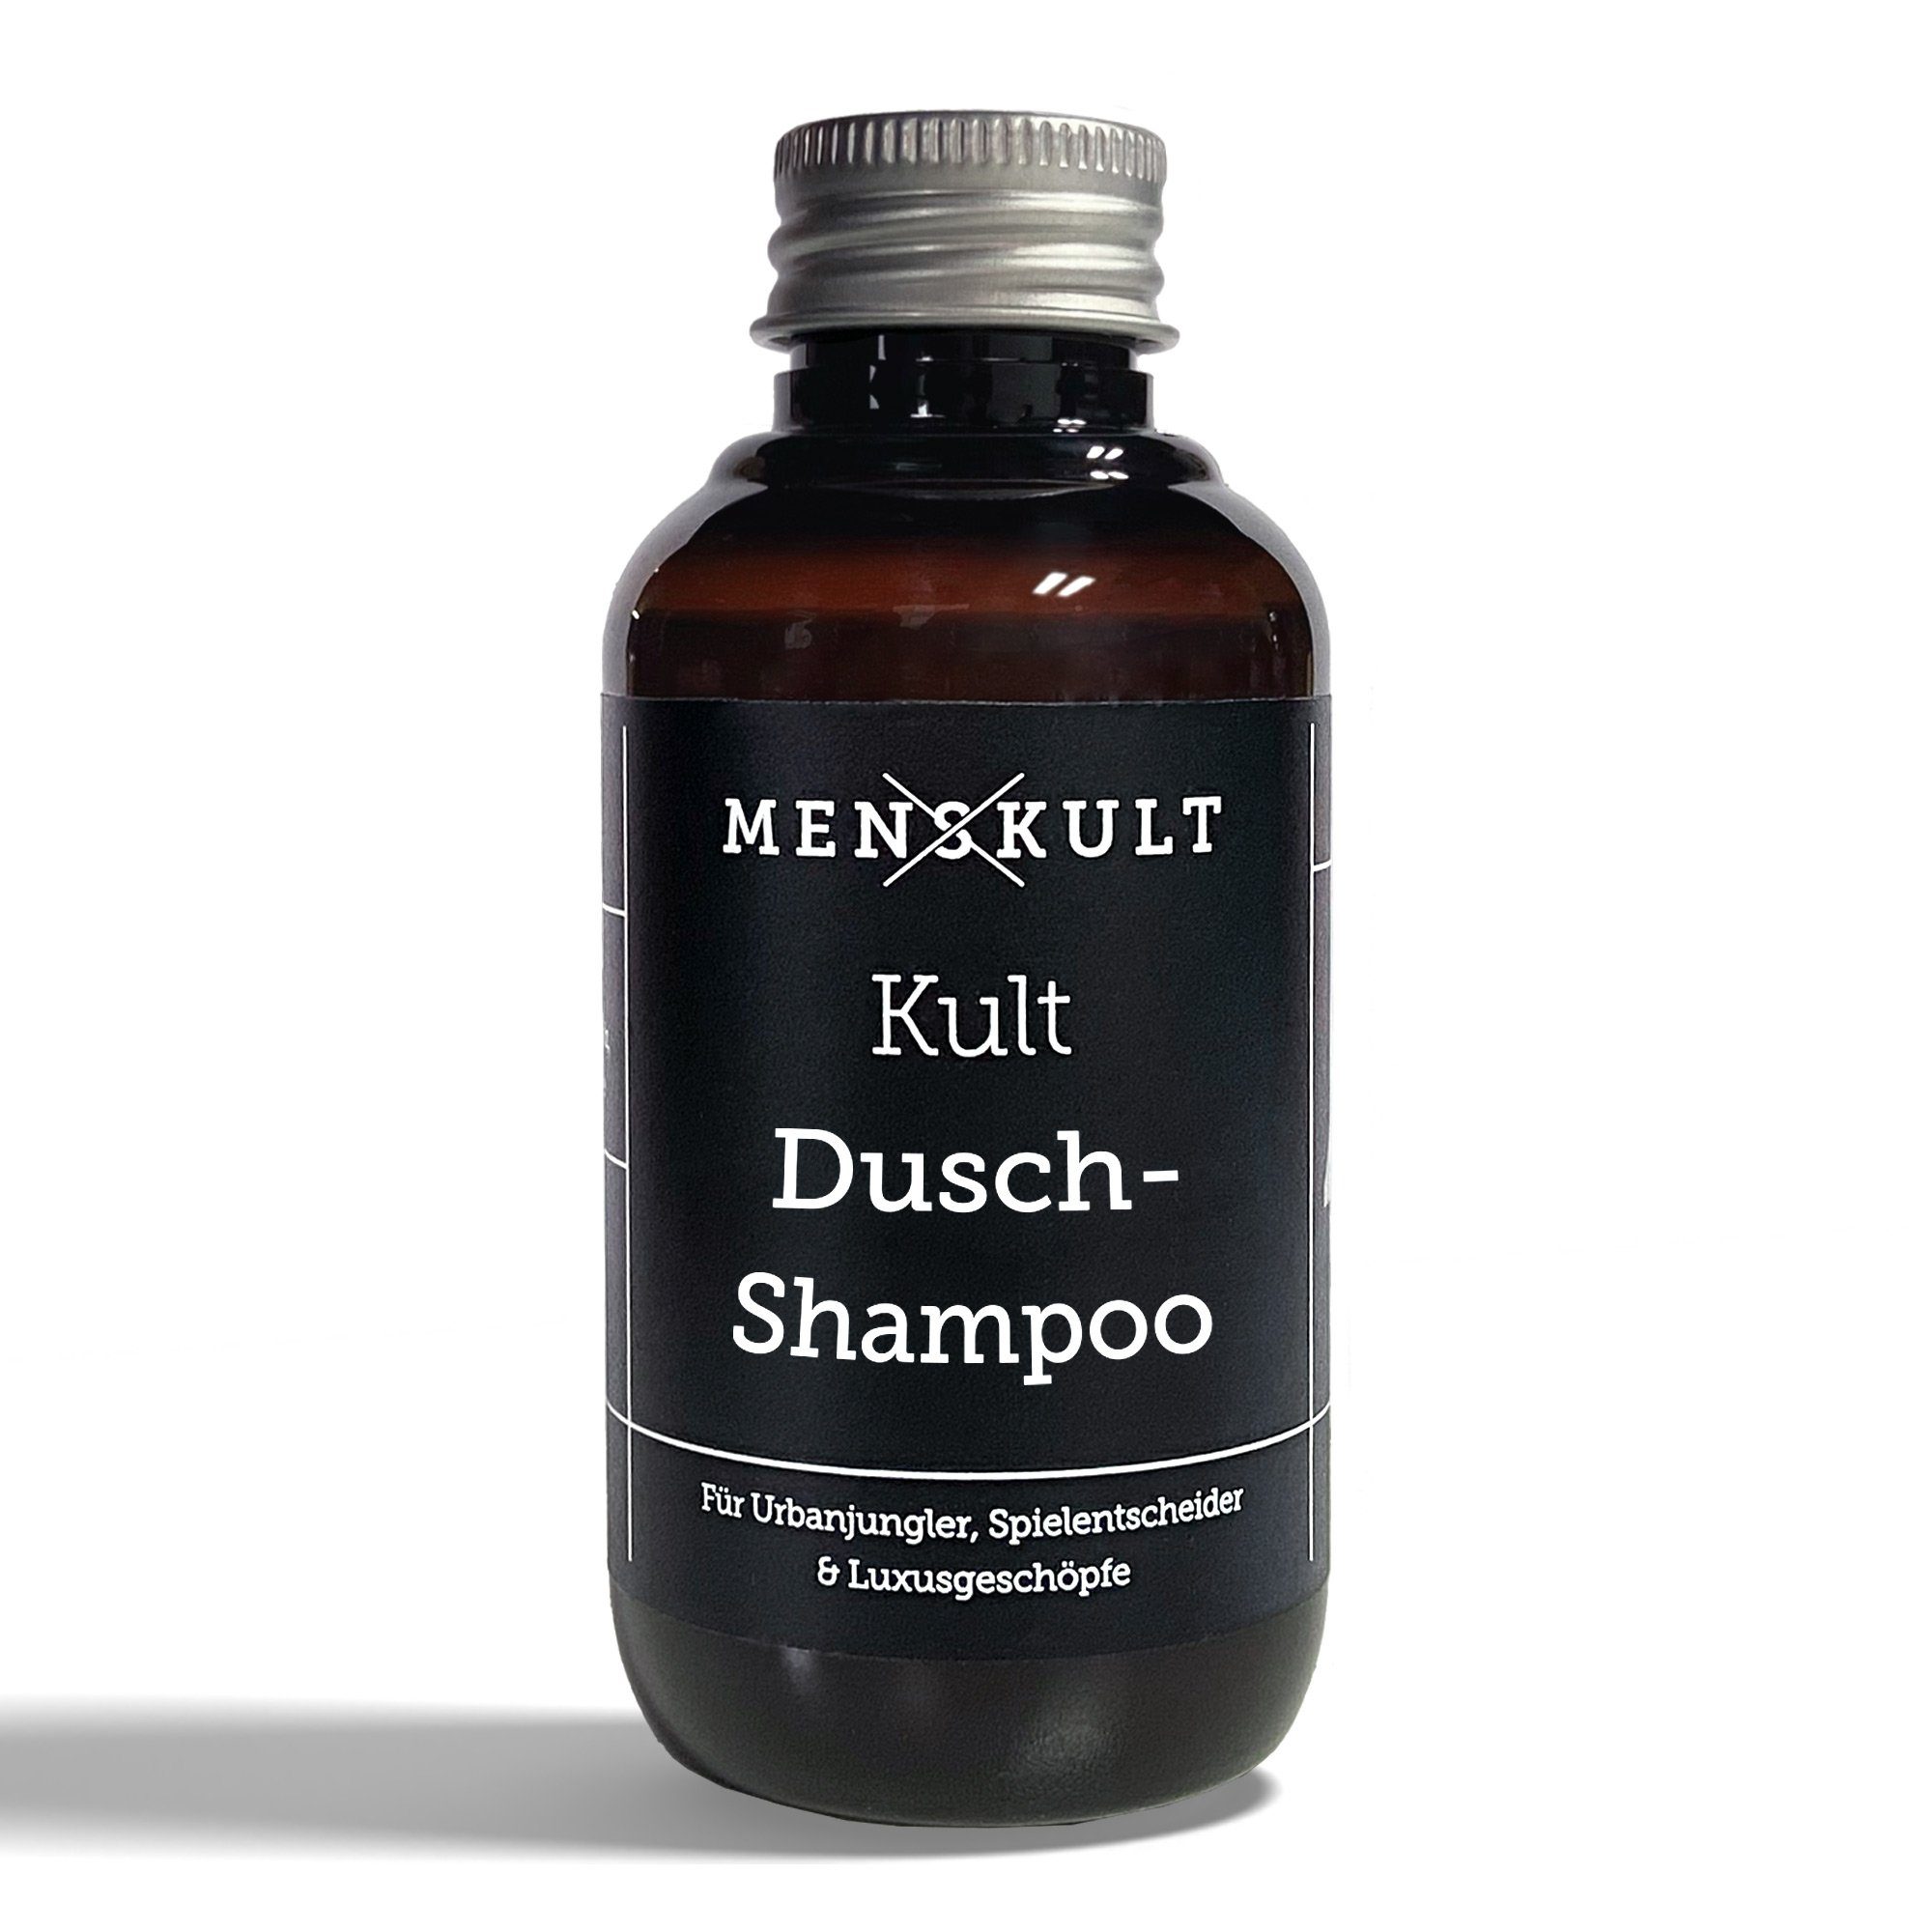 Menskult Haarshampoo Dusch-Shampoo, Der Frischekick für Haut und Haar